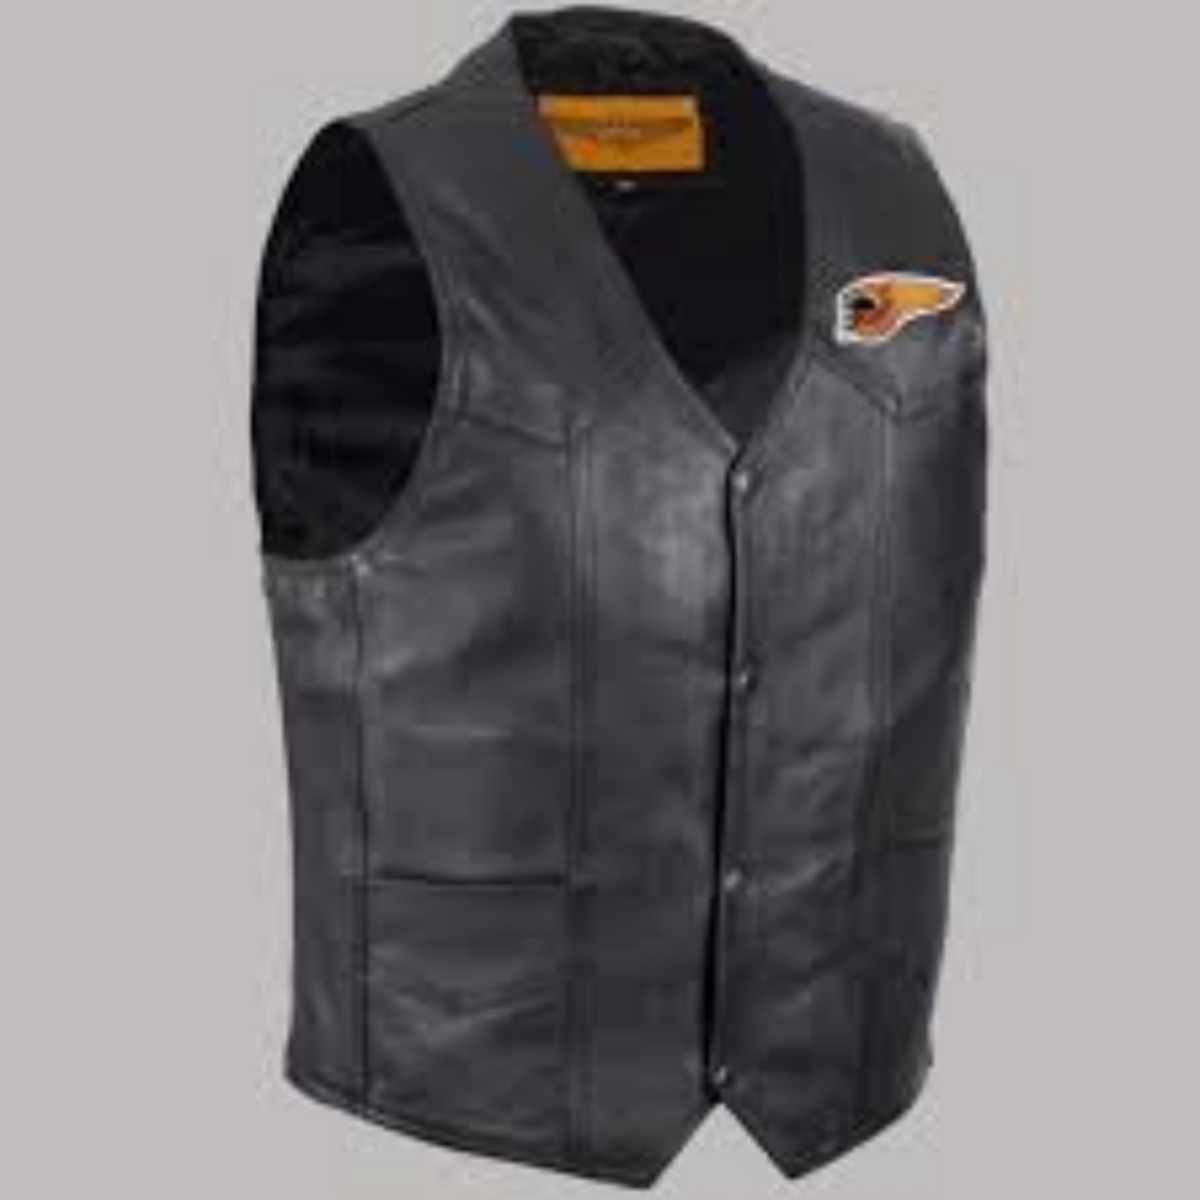 Men's Iron Mountain Leather Jacket